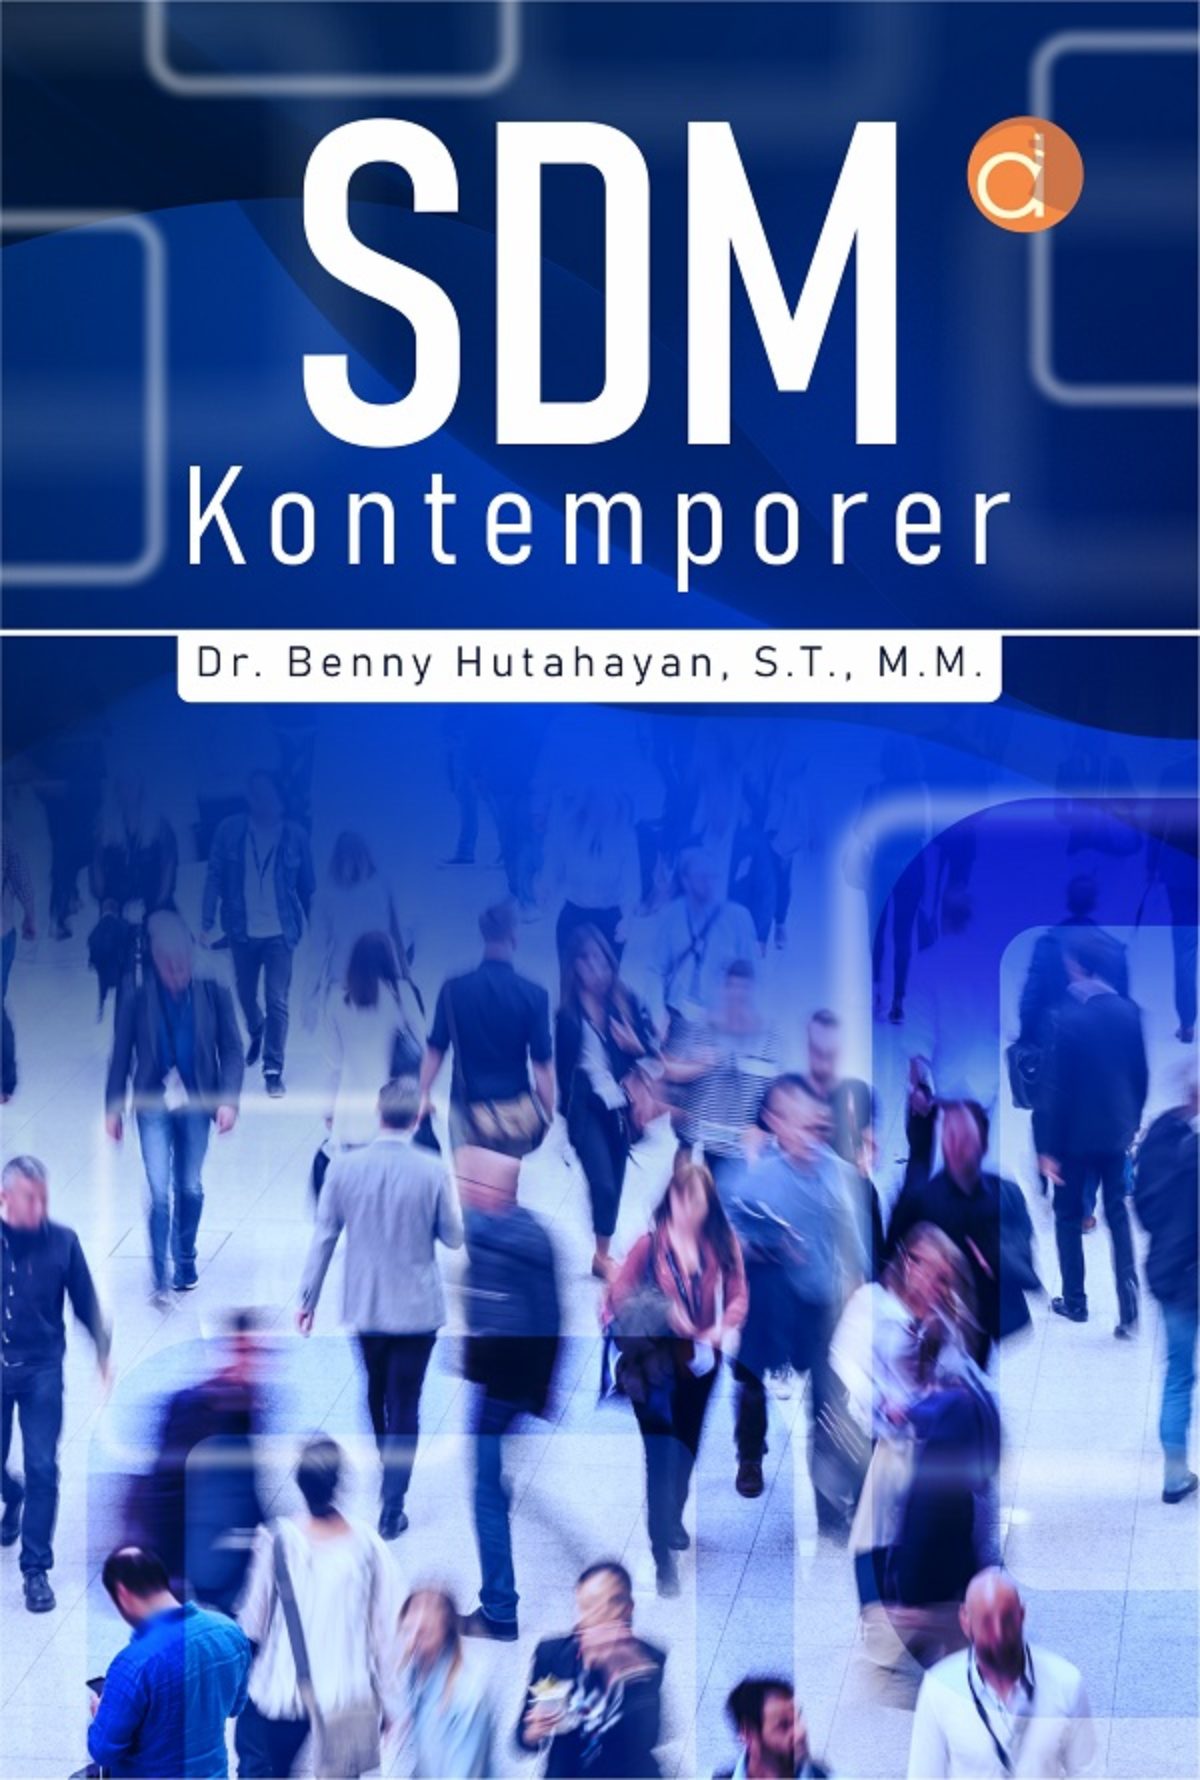 SDM kontemporer